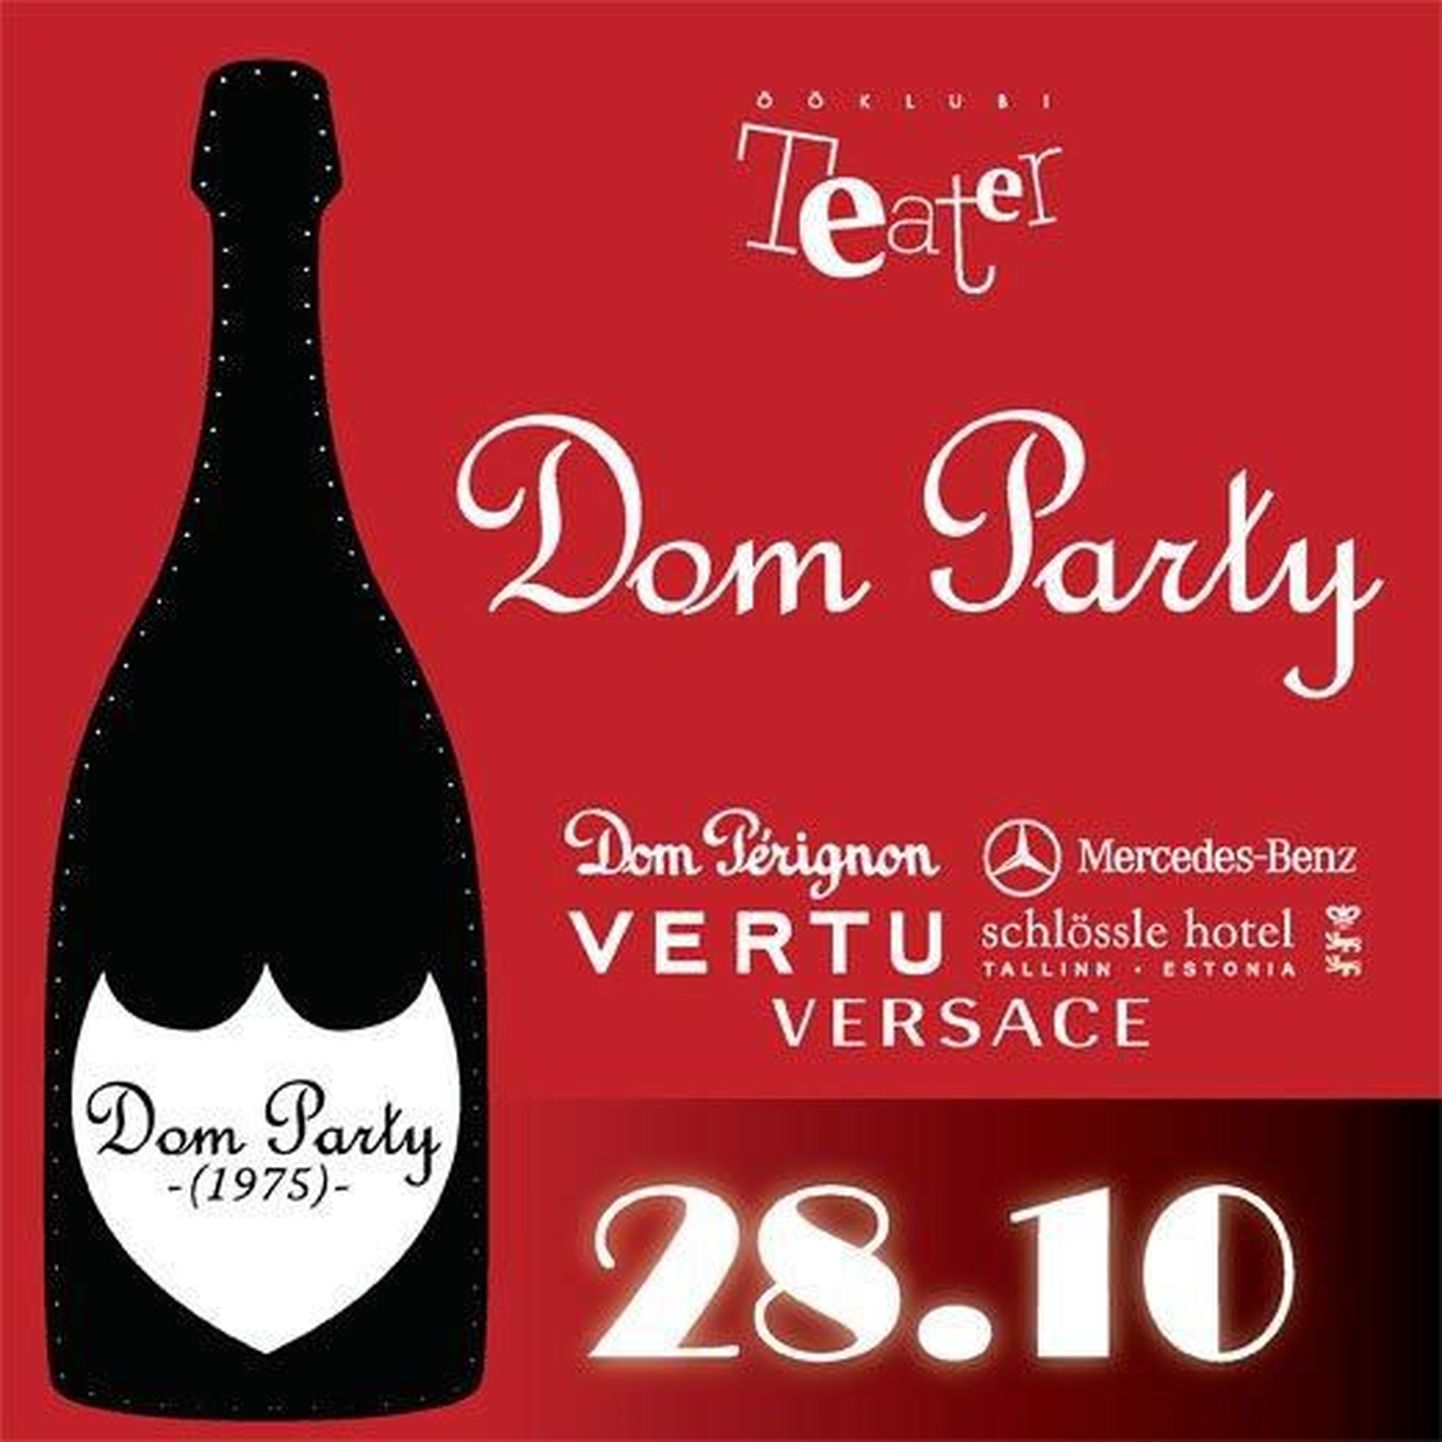 Dom Party on lõbus üritus, mis valmisb koostöös maailmakuulsate brändidega nagu Versace, Vertu, Dom Perignon jpt.